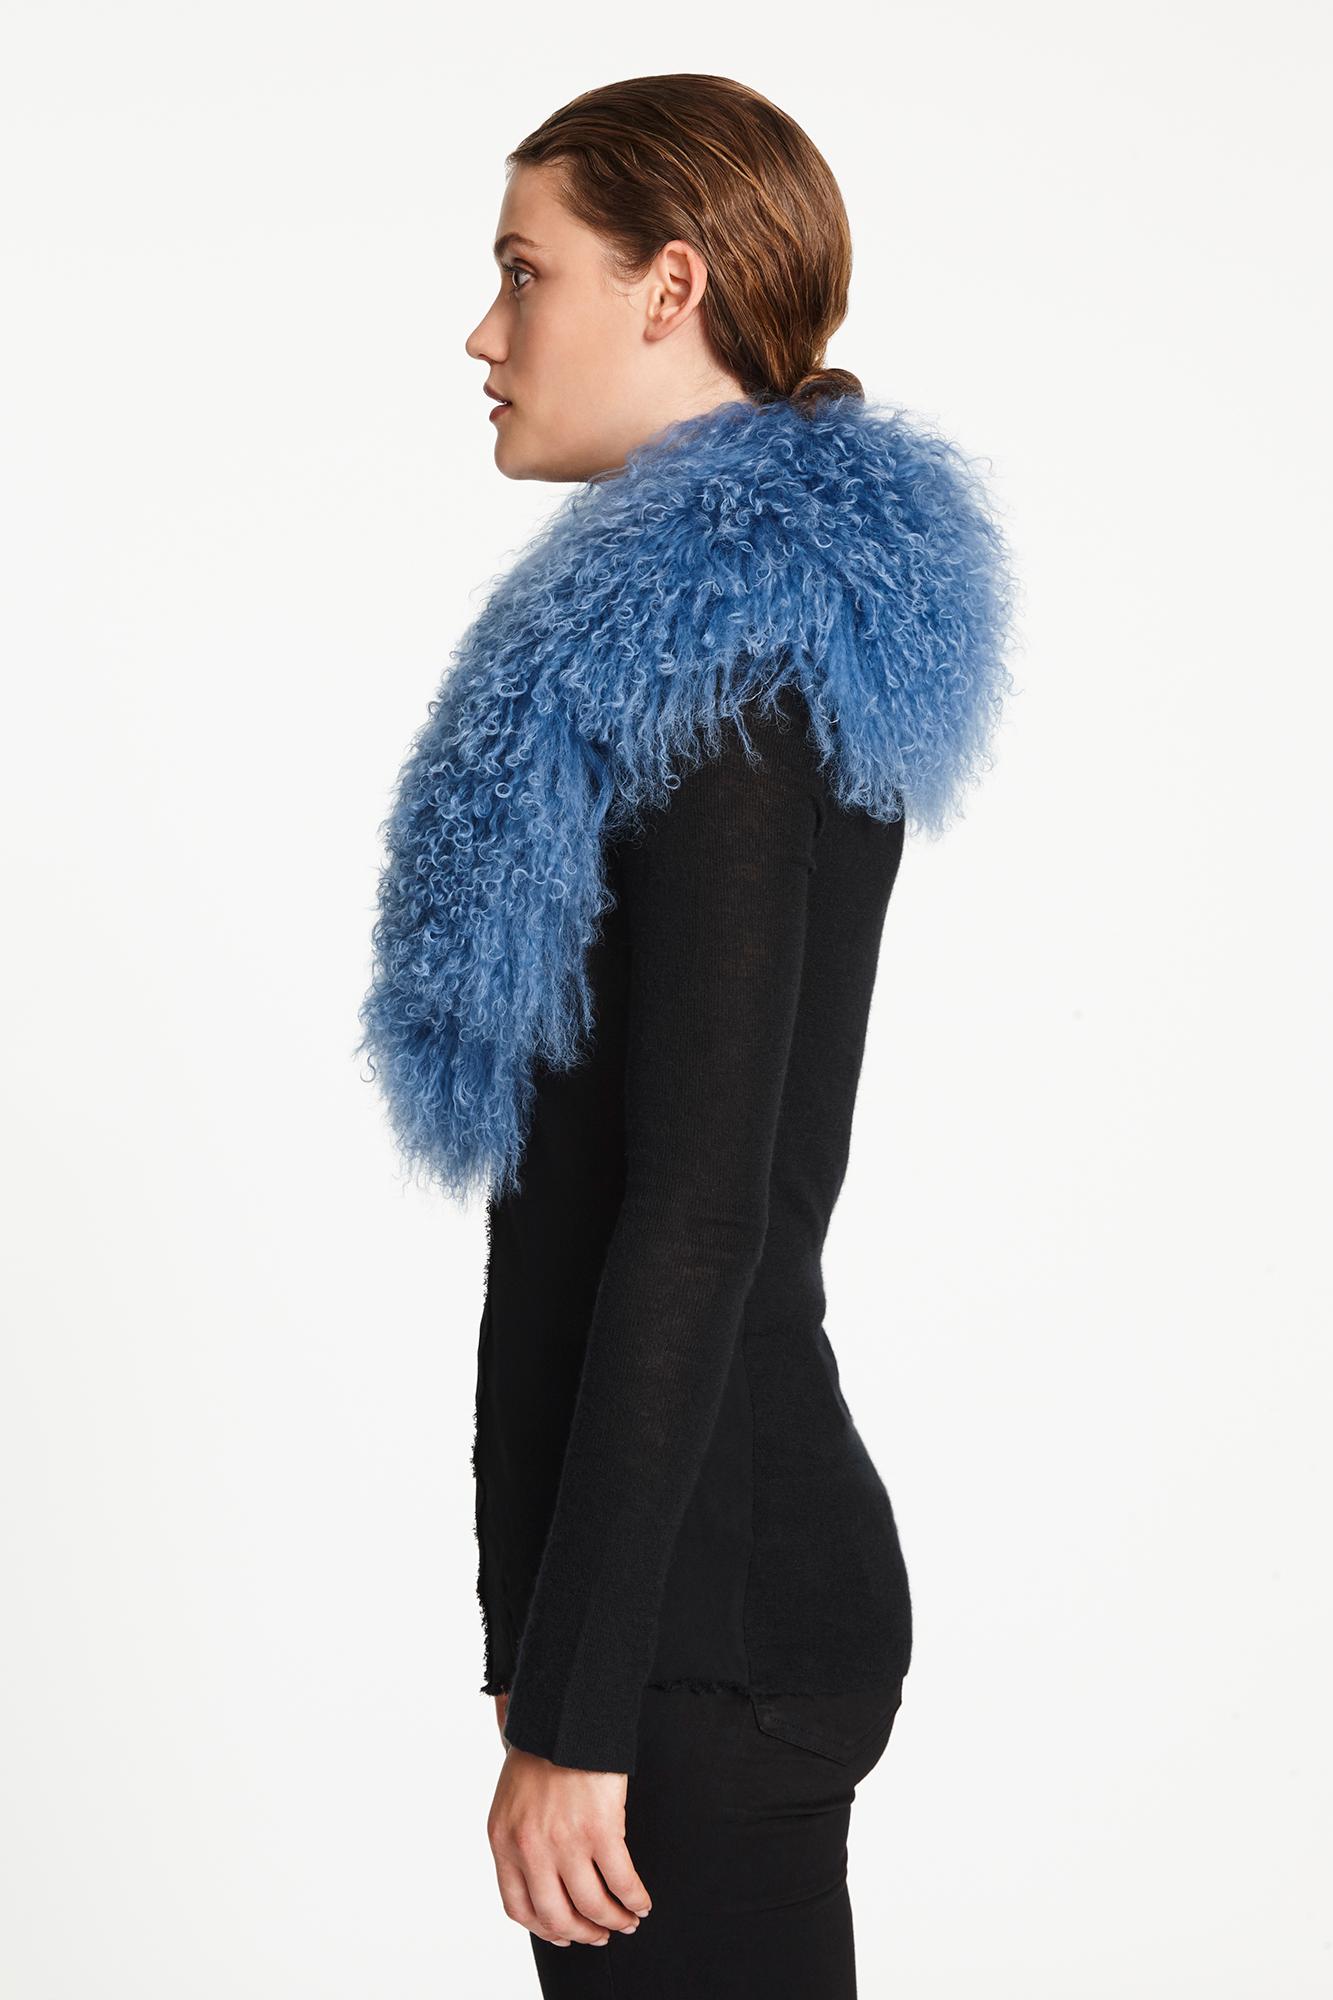 Women's or Men's Verheyen London Shawl Collar in Blue Topaz Mongolian Lamb Fur lined in silk new 